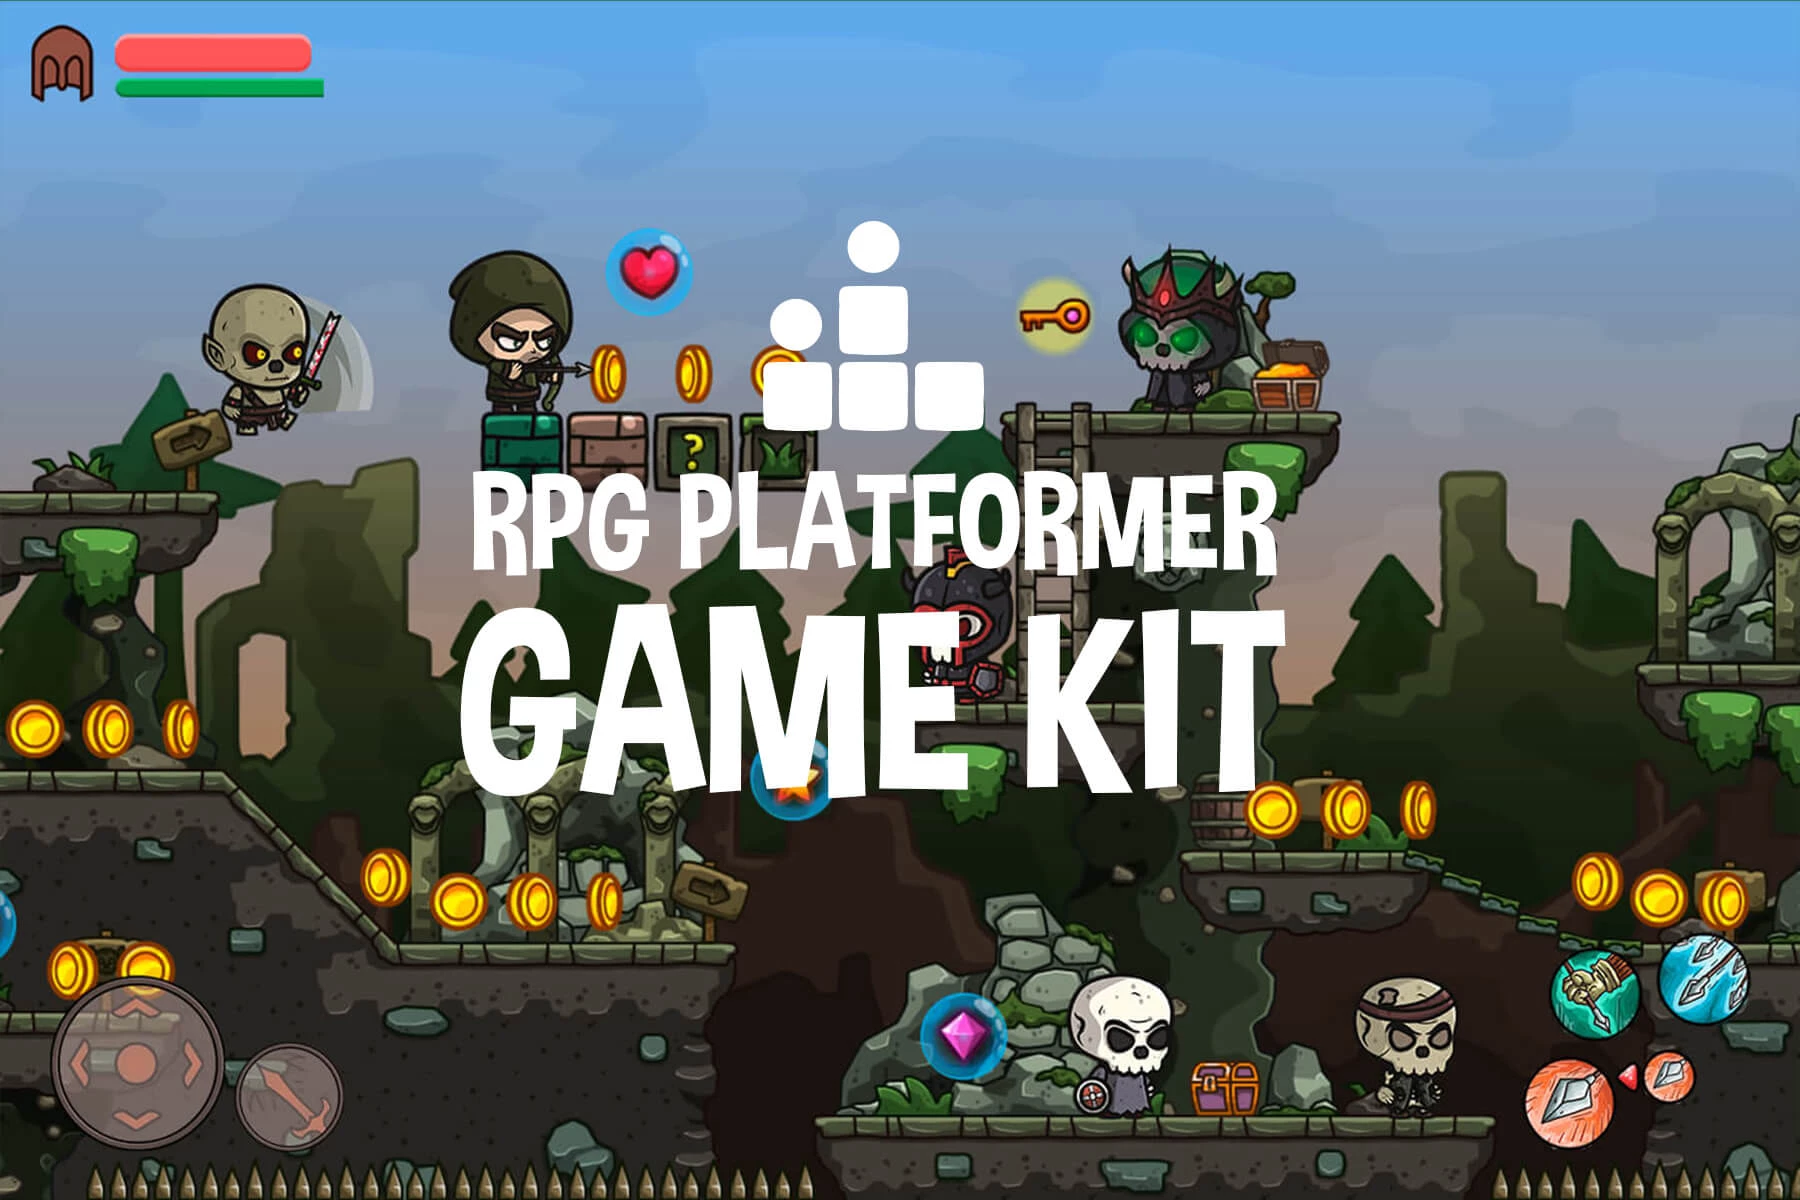 Platformer Games - Play Platformer Games on KBHGames